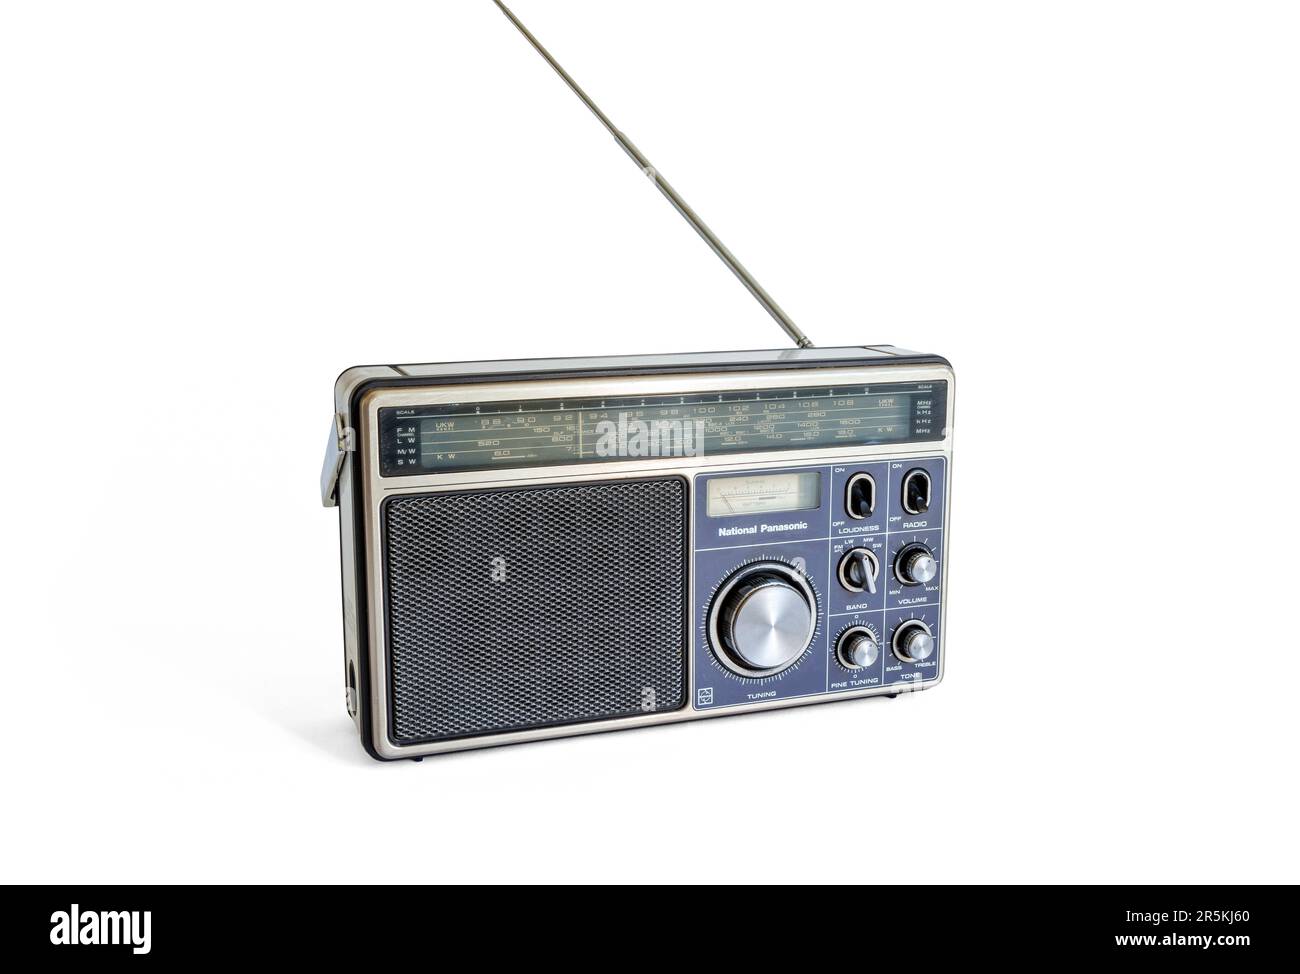 Radio à transistor RF-1110 LBS de National Panasonic de 1978, antenne étendue, isolée sur fond blanc Banque D'Images